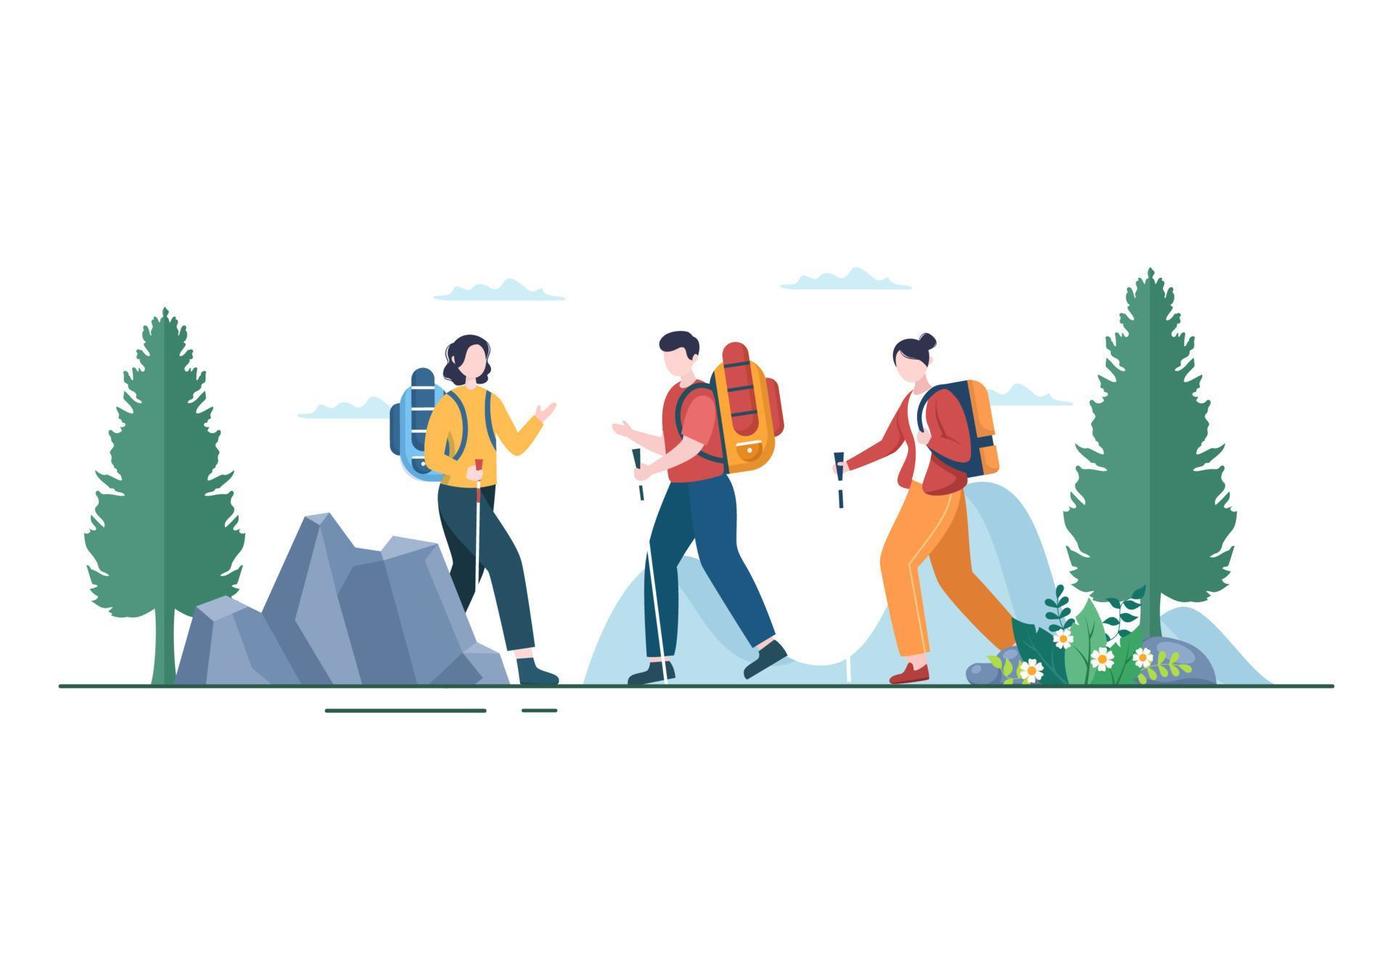 passeio de aventura sobre o tema de escalada, trekking, caminhadas, caminhadas ou férias com vista para a floresta e a montanha em ilustração de cartaz de fundo de natureza plana vetor